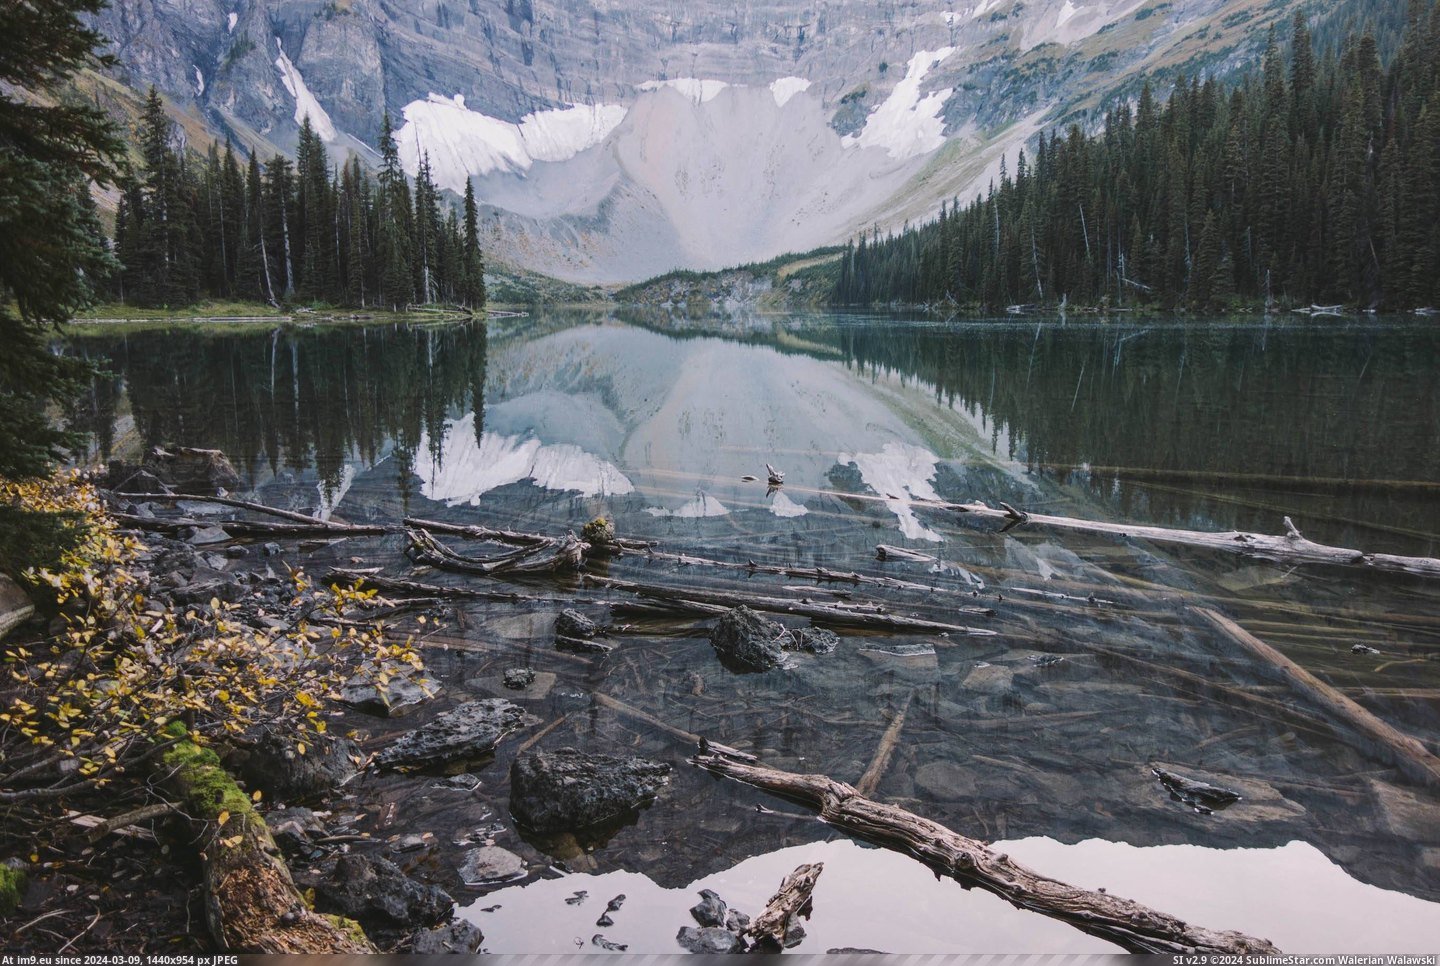 #Lake #Canada #Rawson #Alberta #Reflections [Earthporn] Reflections on Rawson Lake, Alberta, Canada [OC] [2736x1824] Pic. (Bild von album My r/EARTHPORN favs))